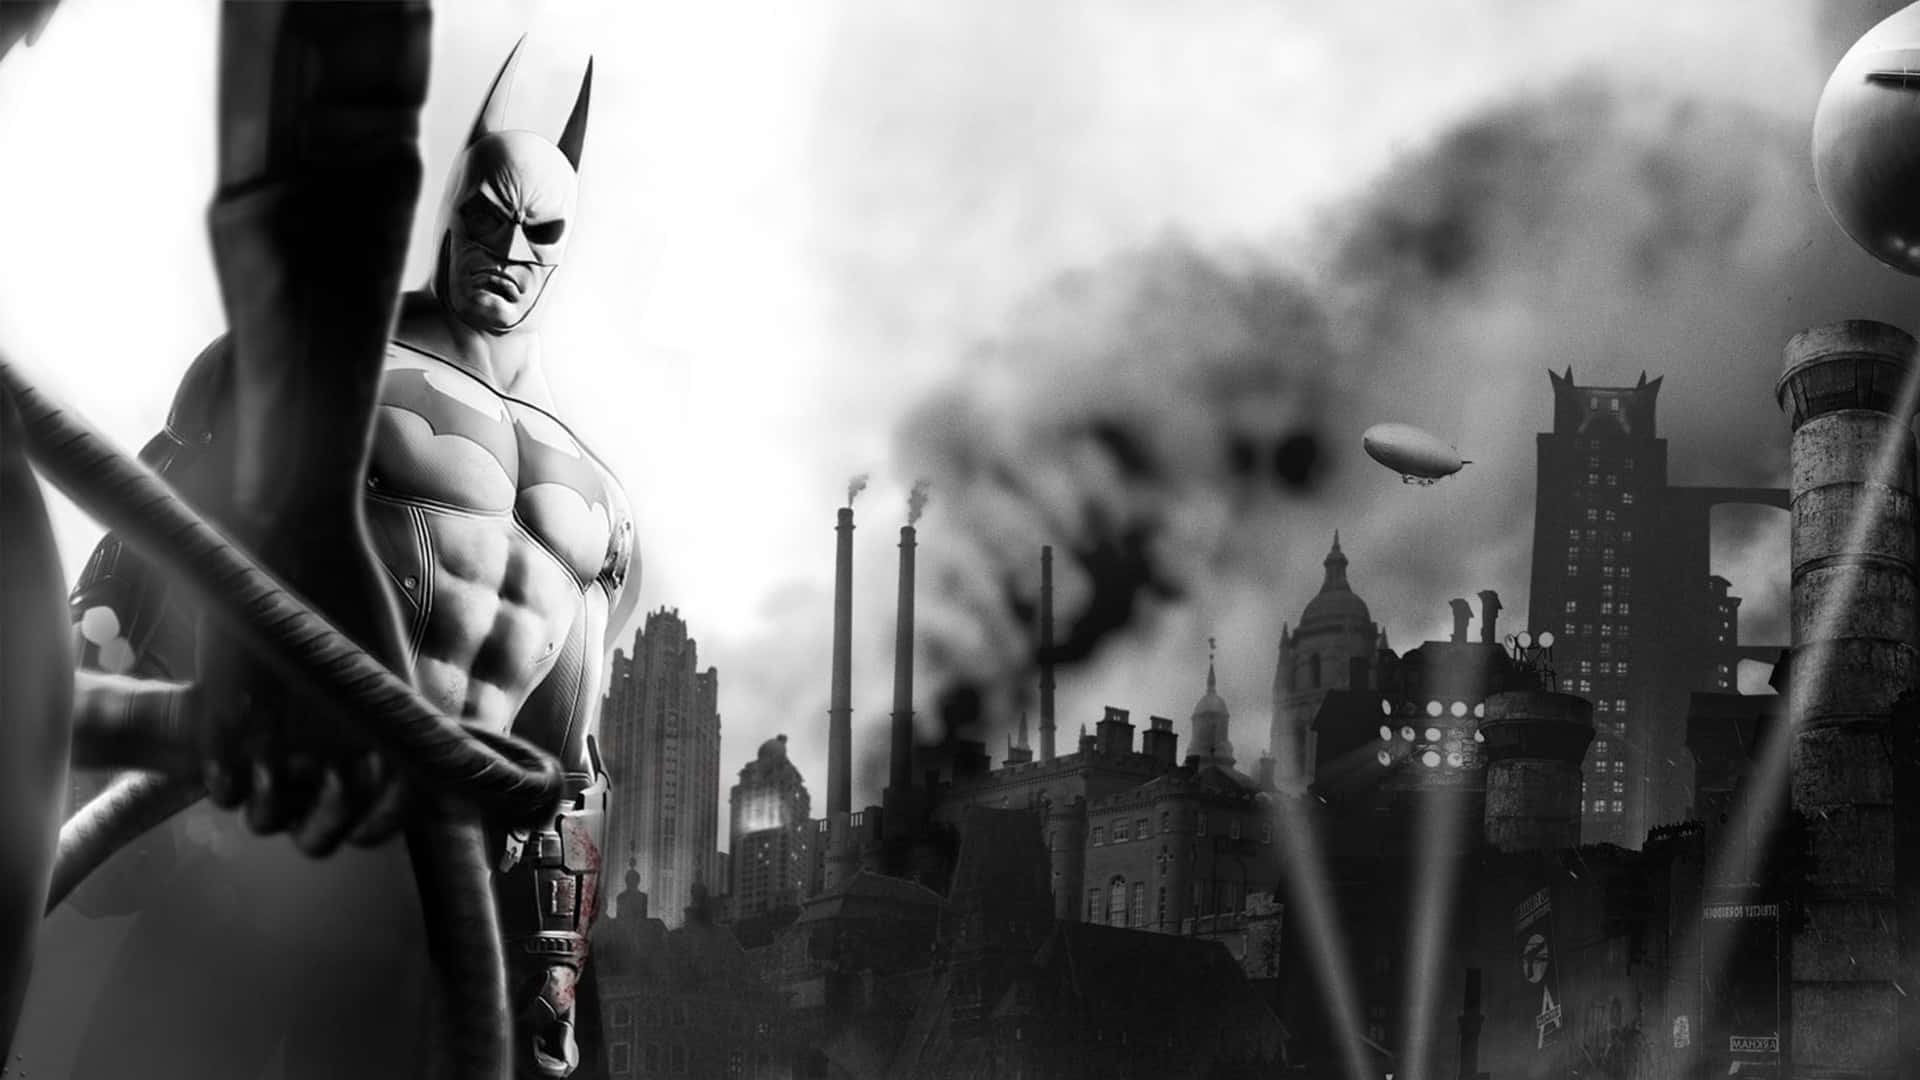 Download Origins Arkham Batman Wallpaper Character Fictional Desktop HQ PNG  Image